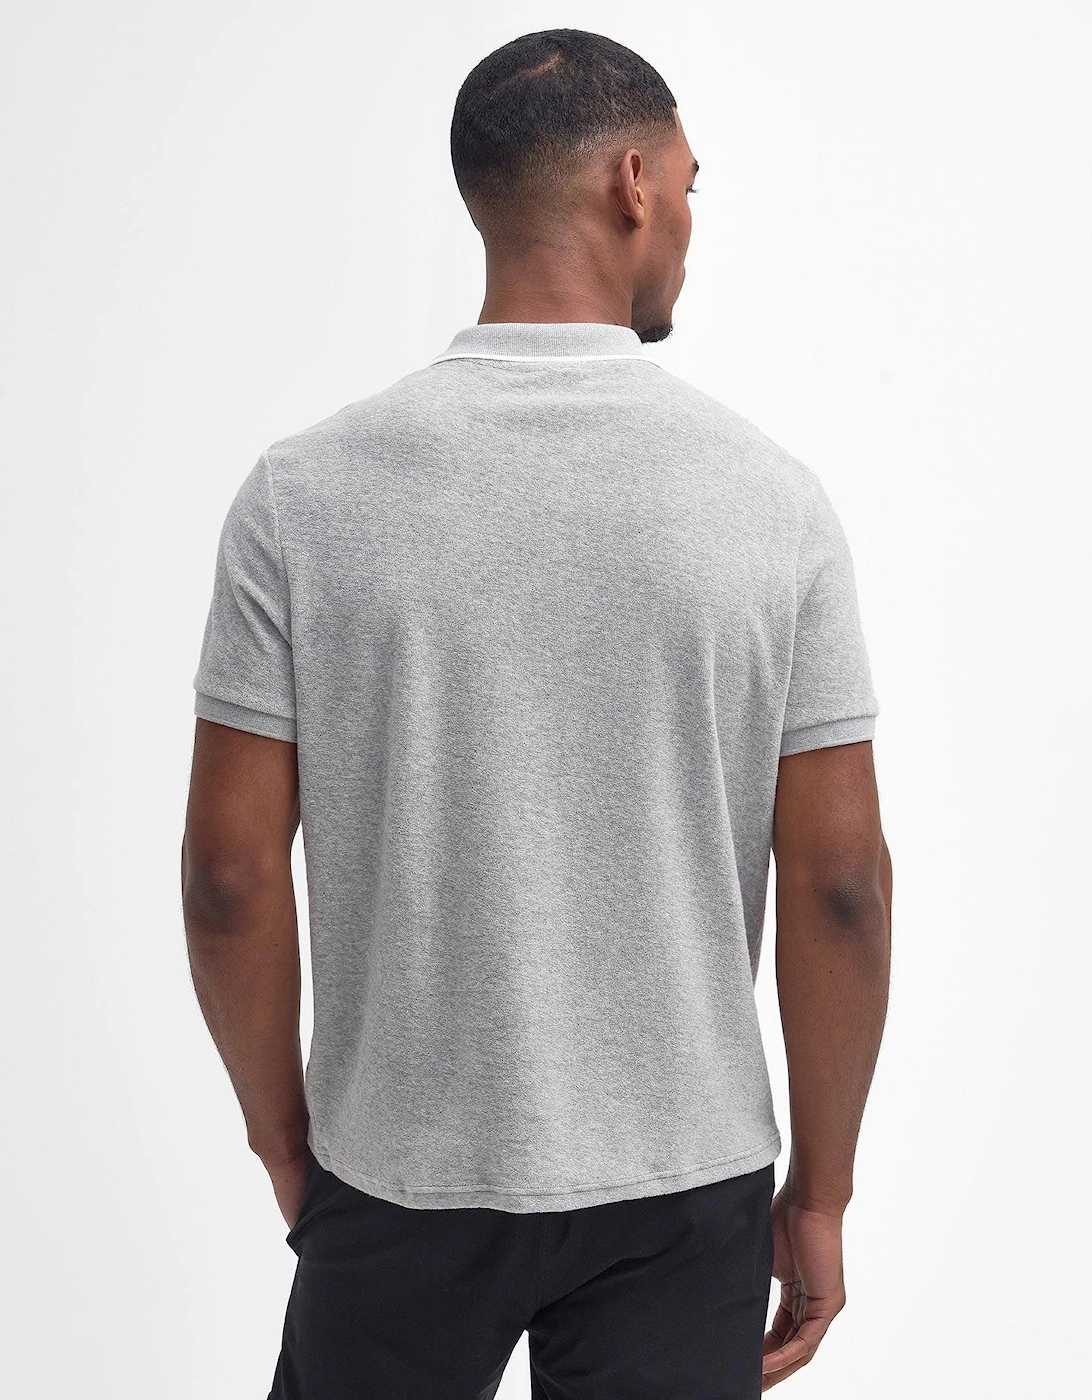 Wilton Polo Shirt GY52 Grey